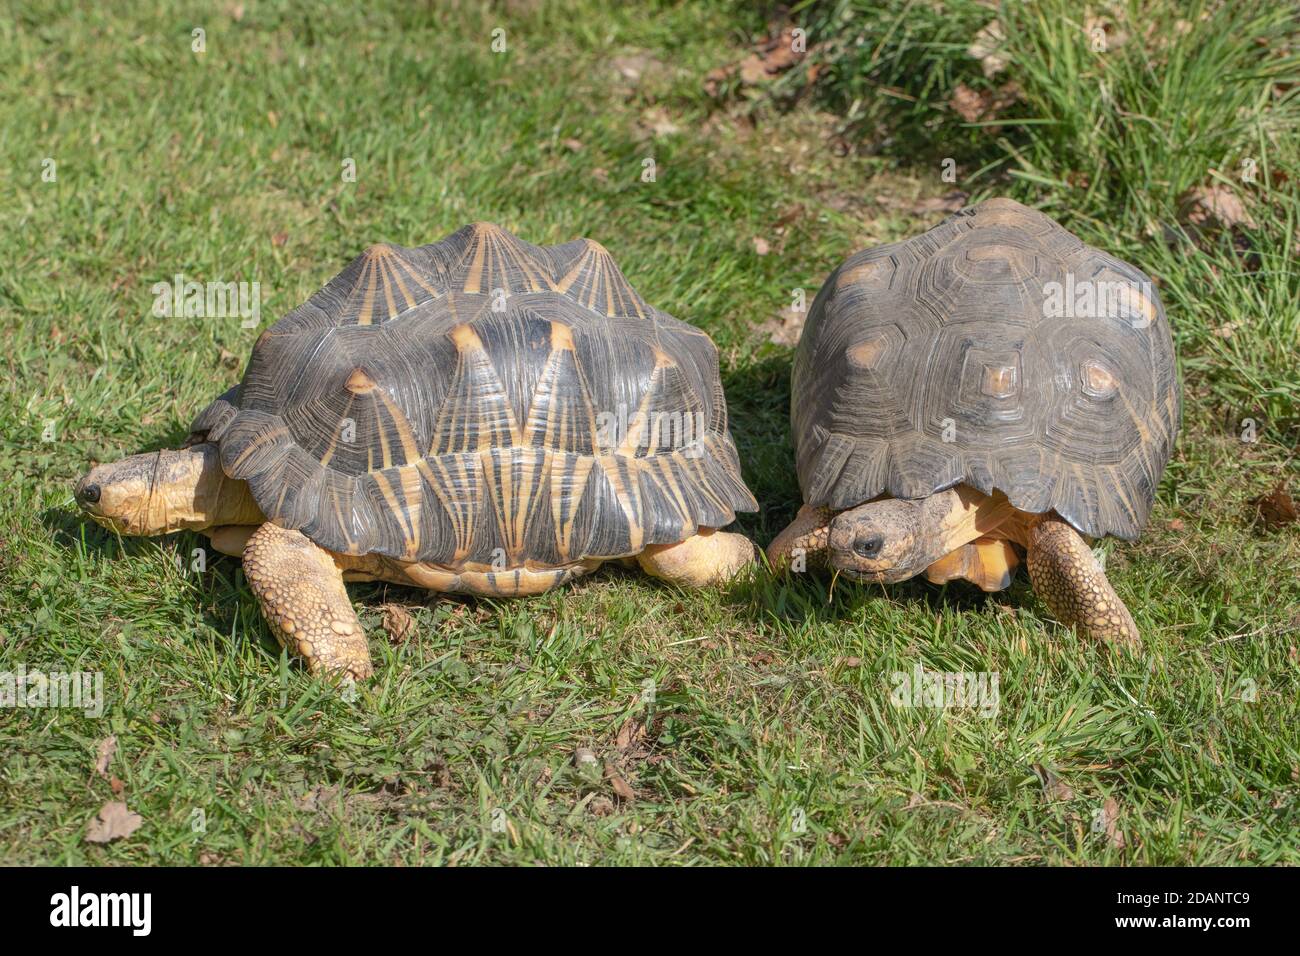 Abgestrahlte Schildkröten (Astrochelys radiata). Zwei Erwachsene zusammen. Profil und Vorderansichten. Kopf und Hals ausgezogen. Walking.Recognition durch Duft, Gerüche. Stockfoto